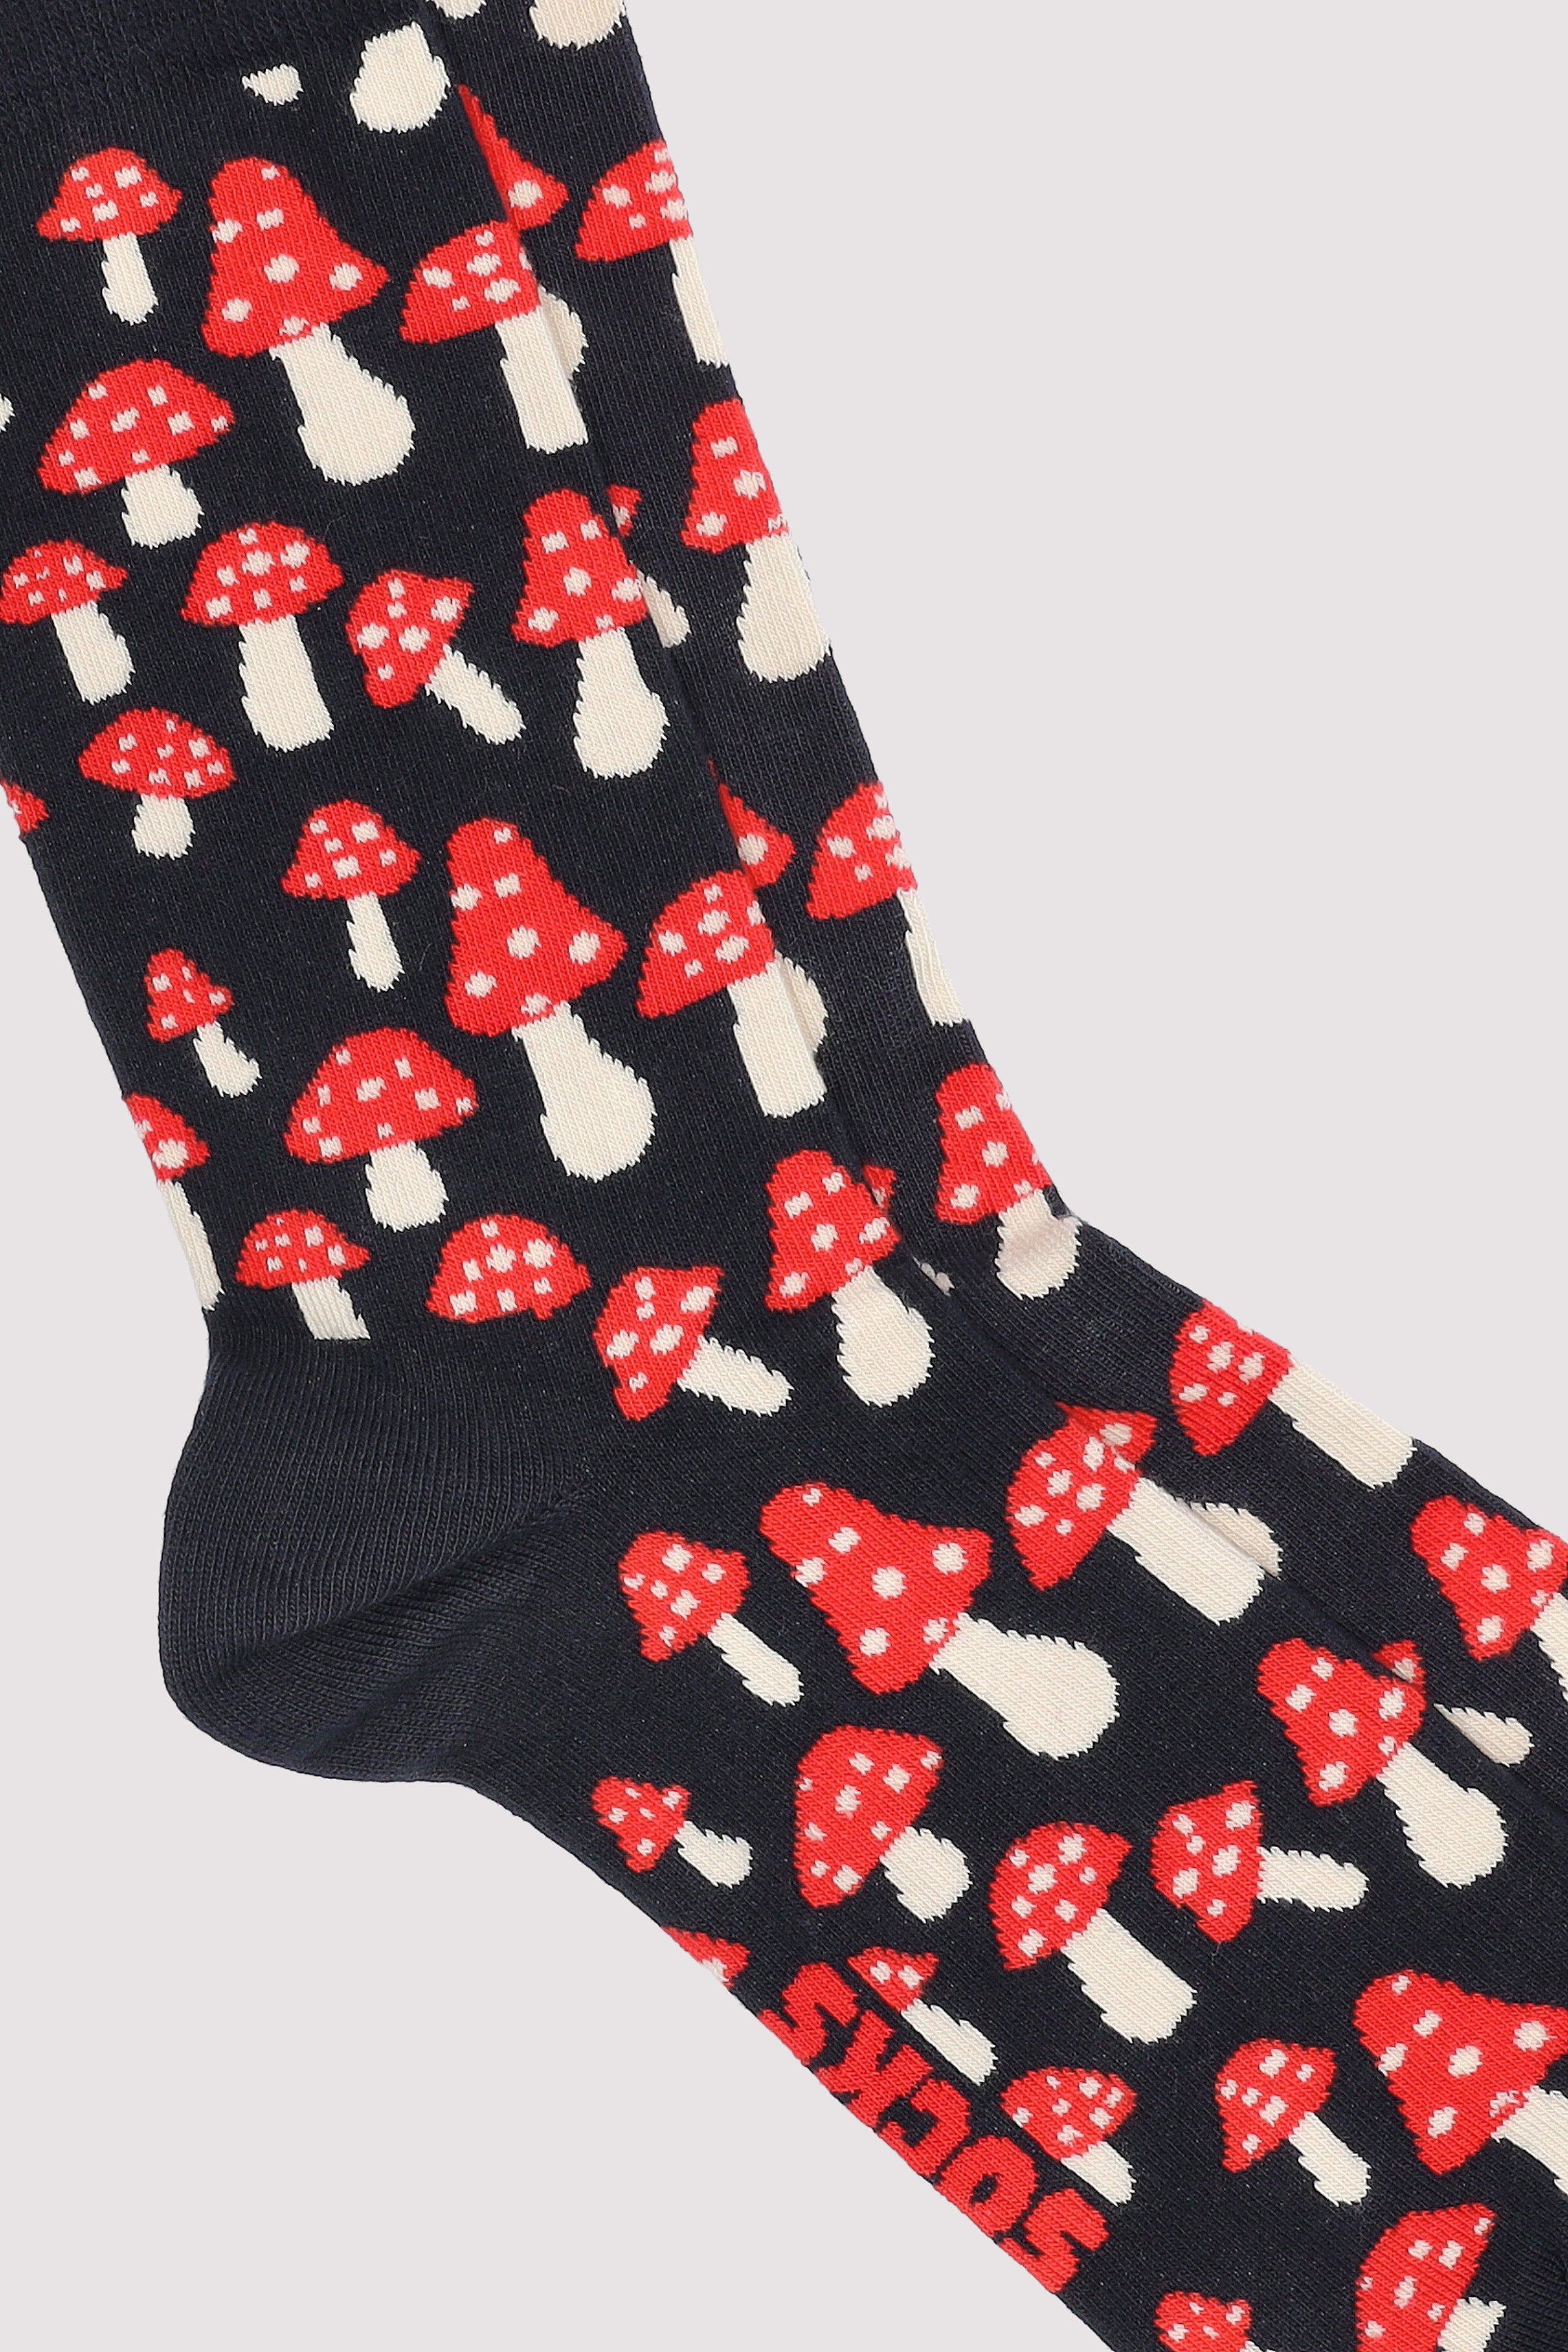 Mushroom Sock